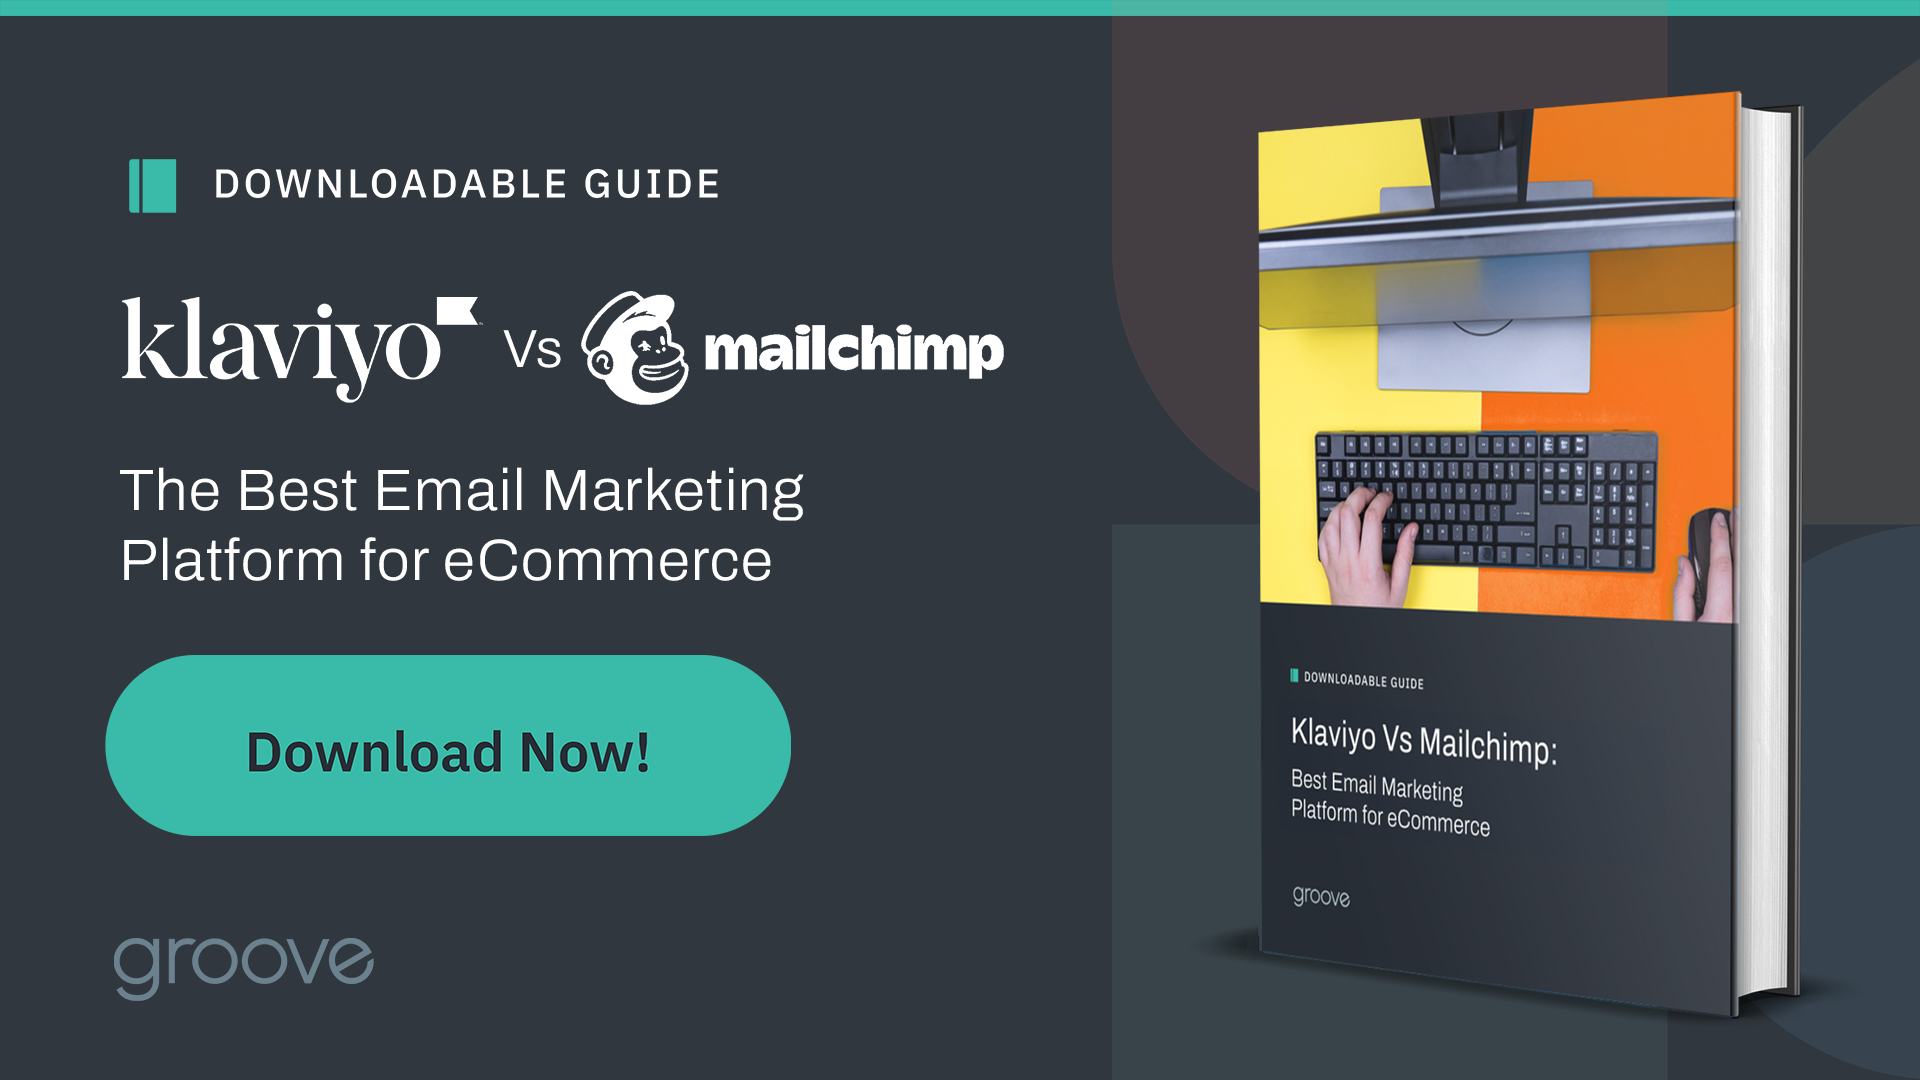 Klaviyo vs Mailchimp: Best Email Marketing Platform for eCommerce